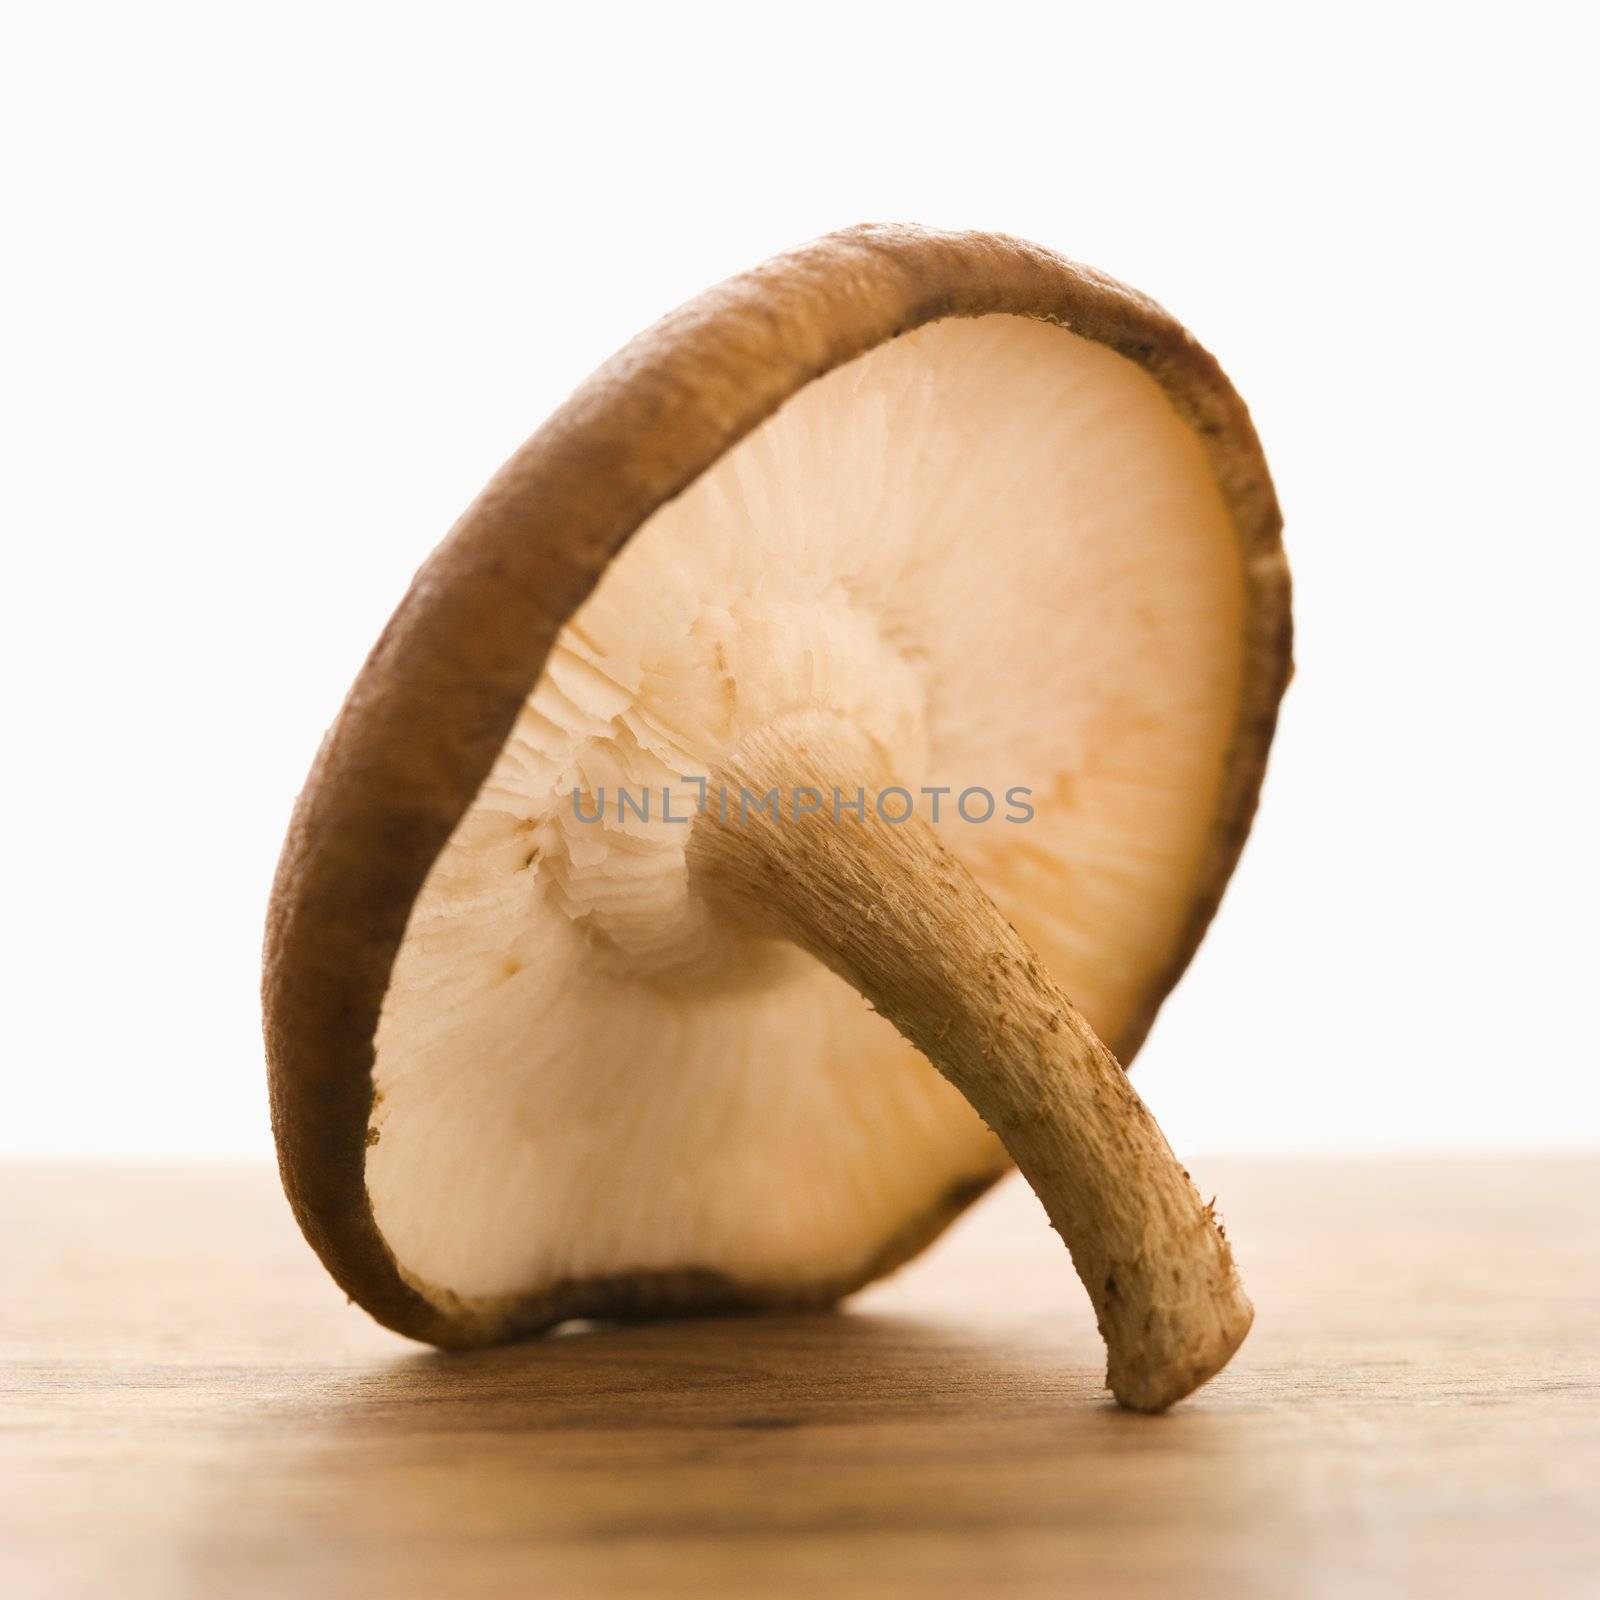 Still life of single brown mushroom.